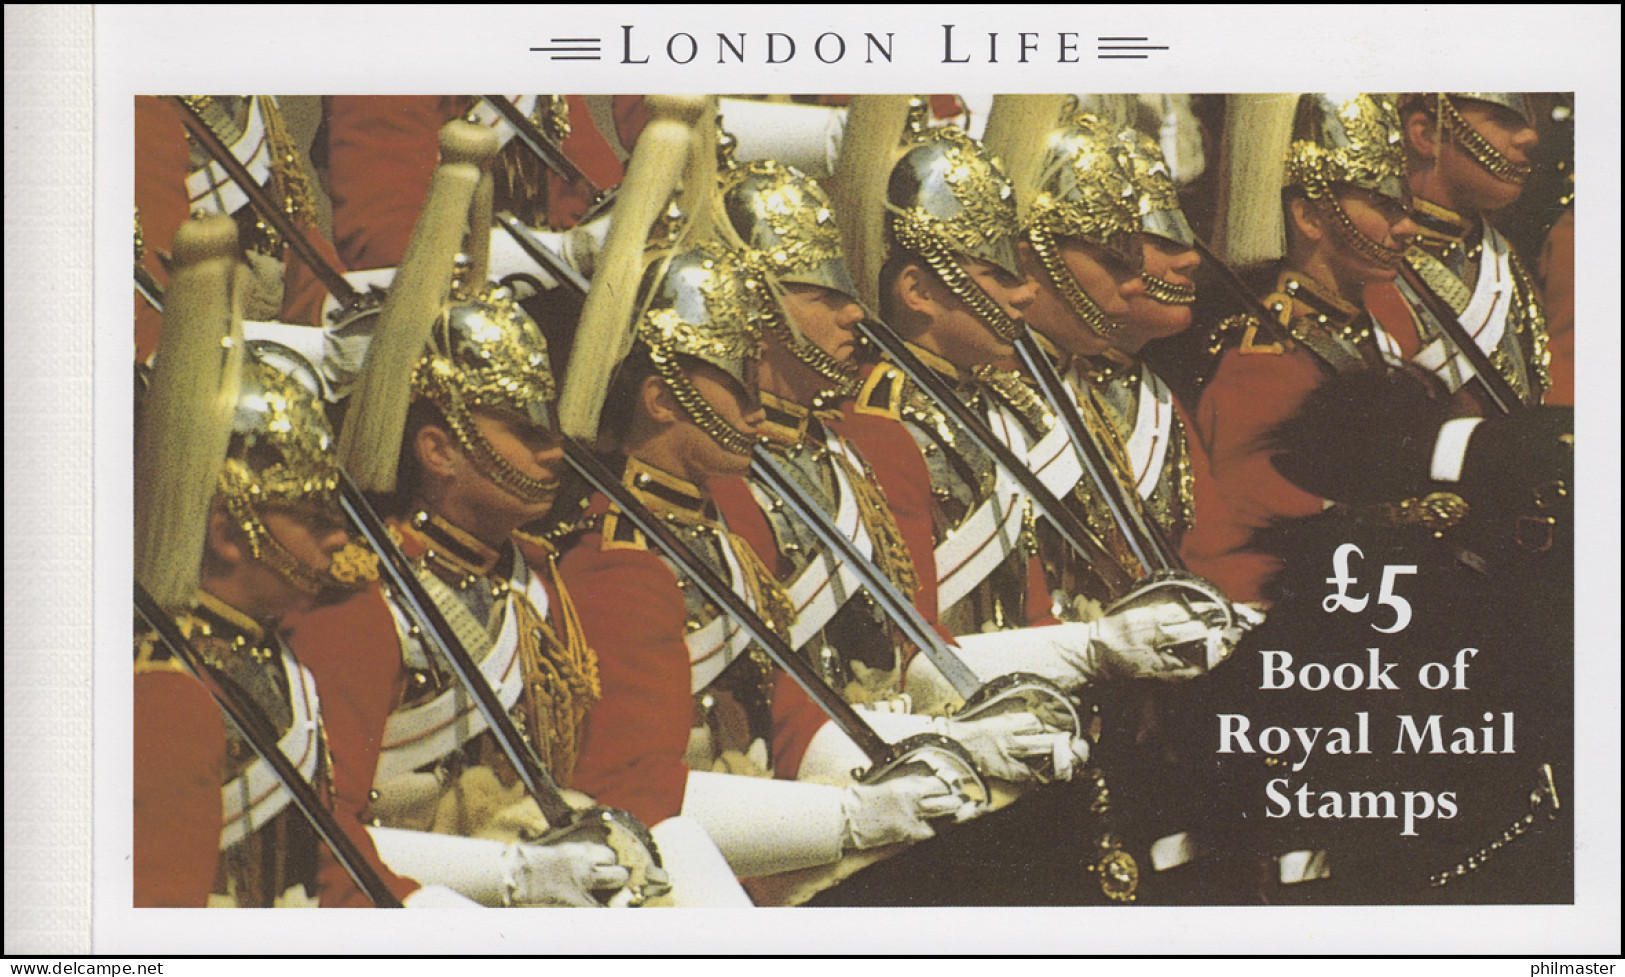 Großbritannien-Markenheftchen 91 Königin Elisabeth II London Life 1990, ** - Booklets